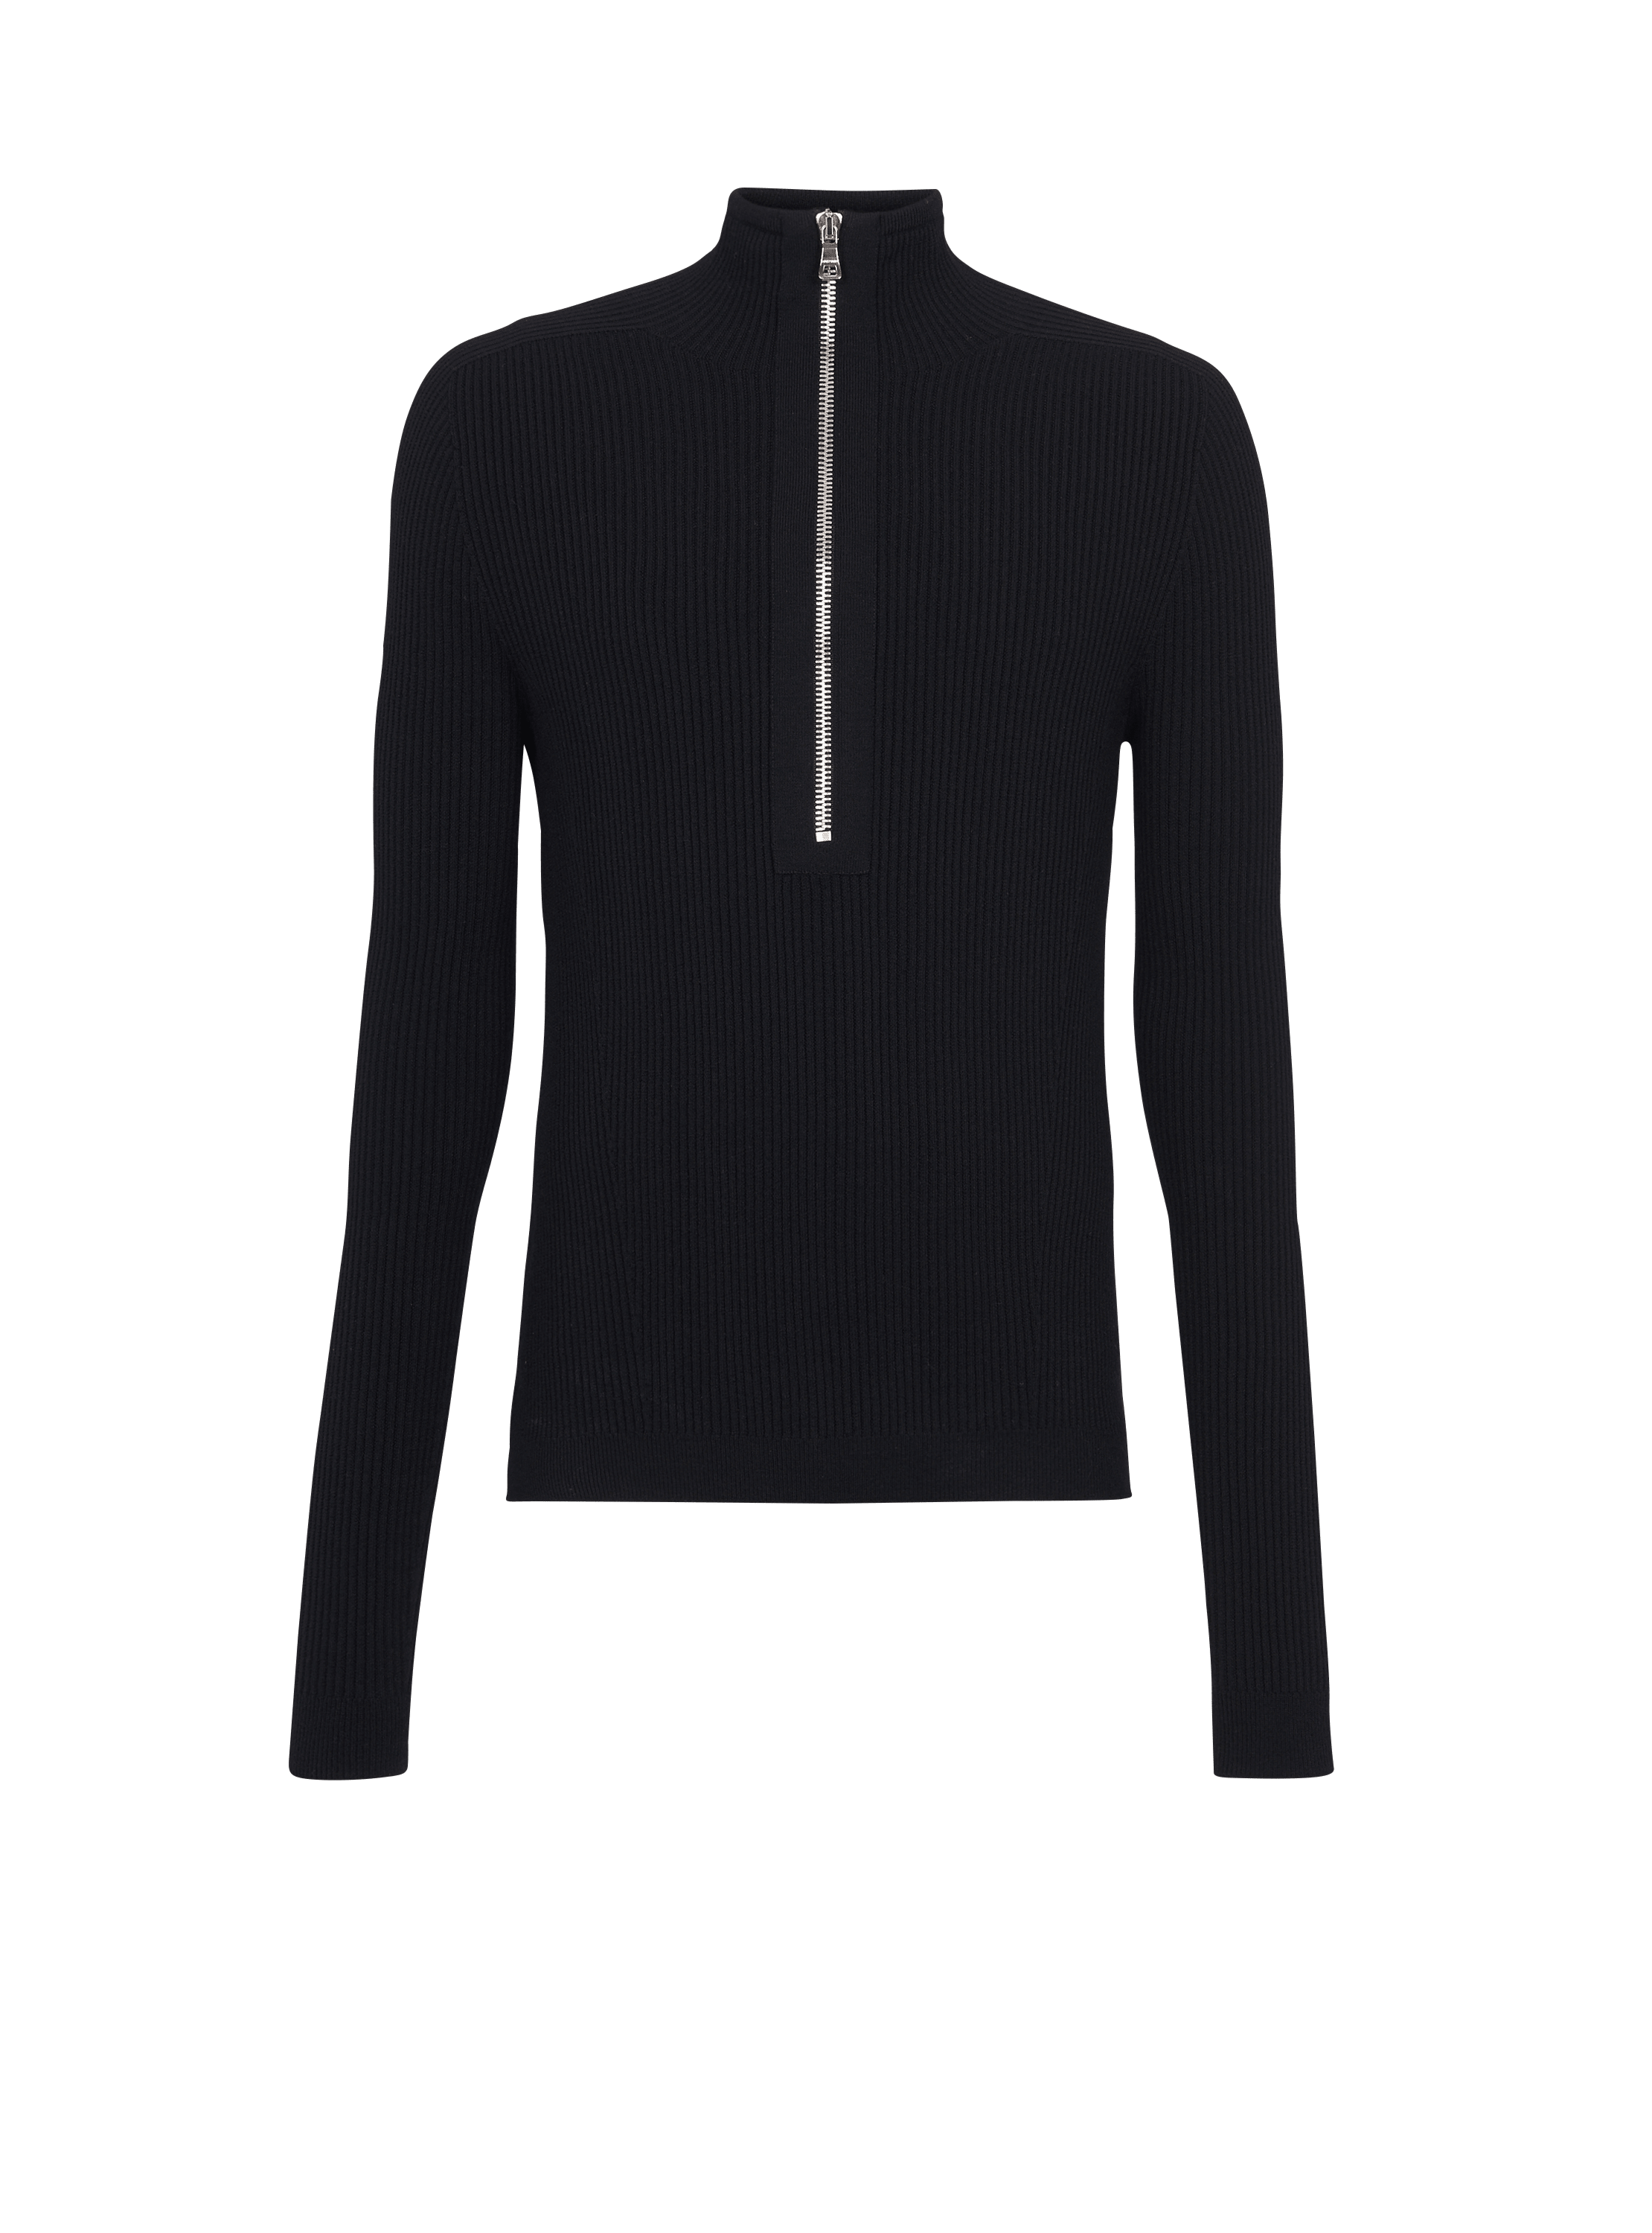 Wool jumper, black, hi-res